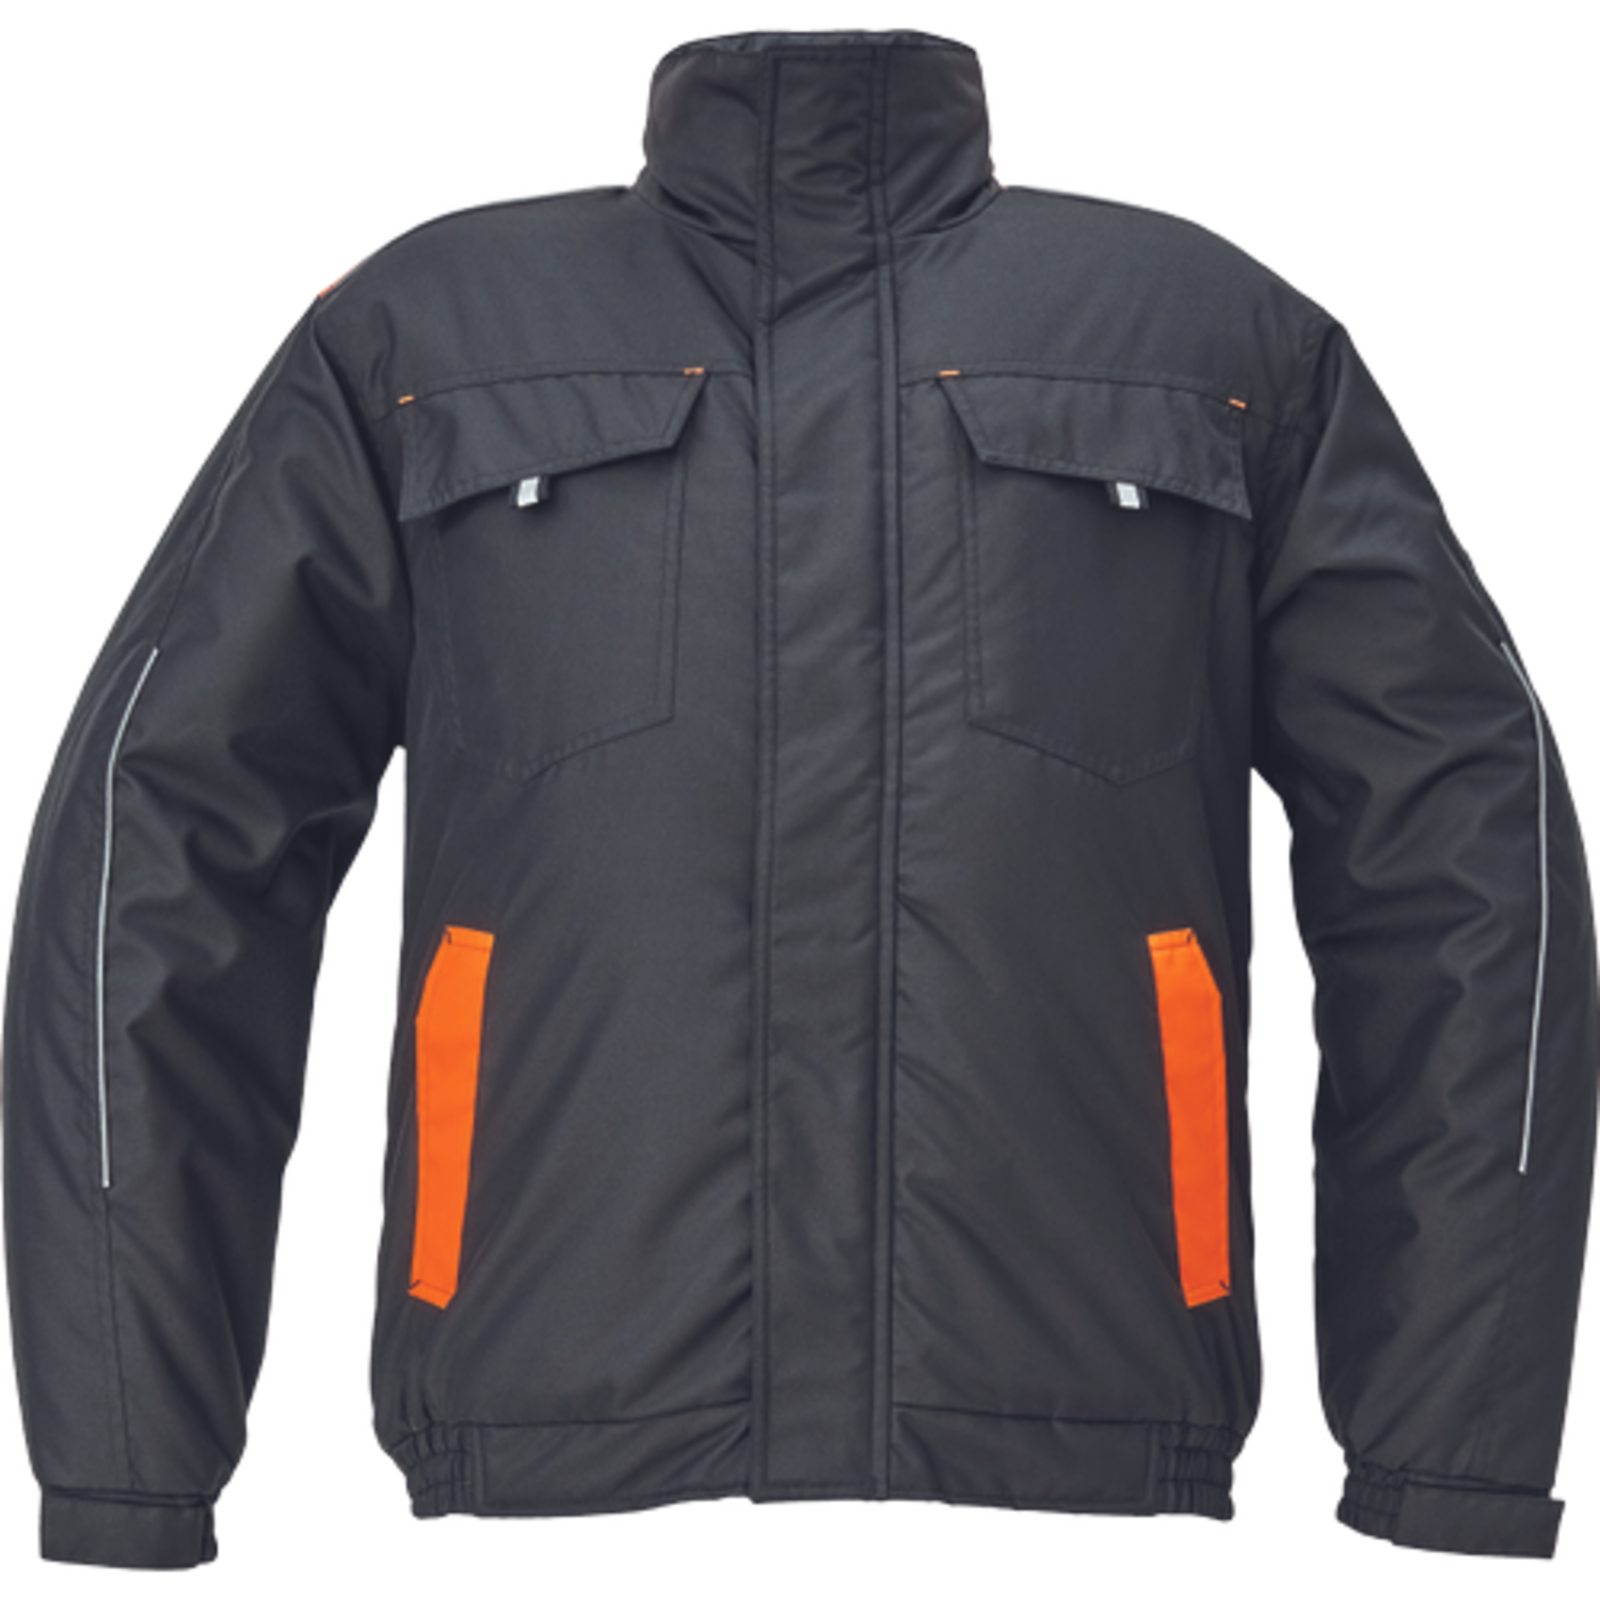 Pánska zimná bunda Cerva Max Vivo Pilot - veľkosť: L, farba: čierna/oranžová